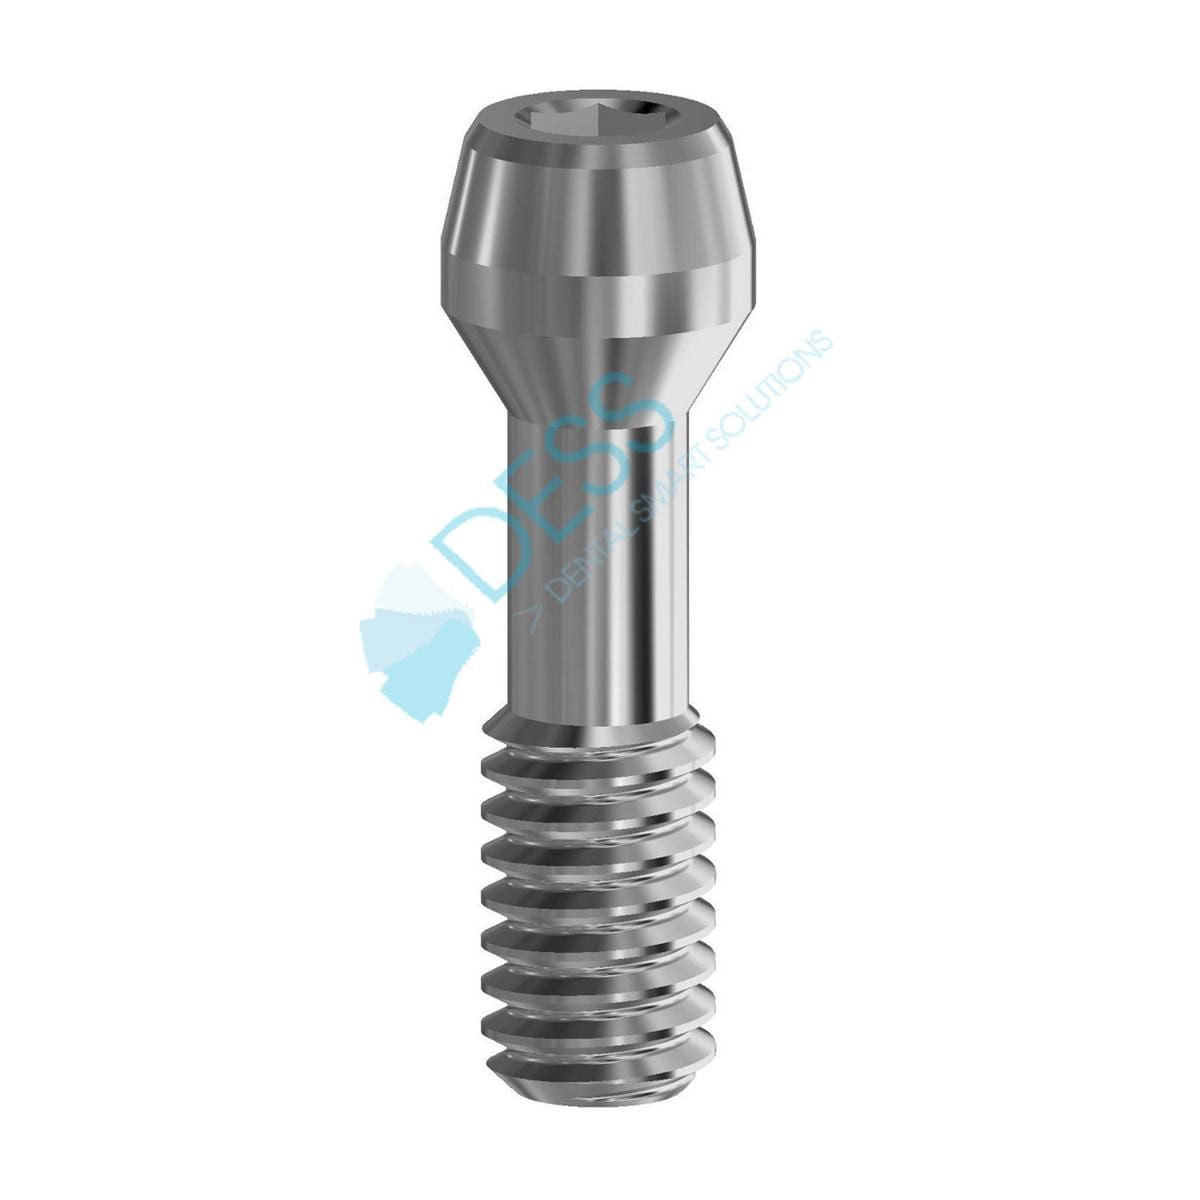 Abutmentschraube 6-Kant 1,0 mm - kompatibel mit Dentsply Ankylos® - Für Höhe 1,0 - 1,5 mm